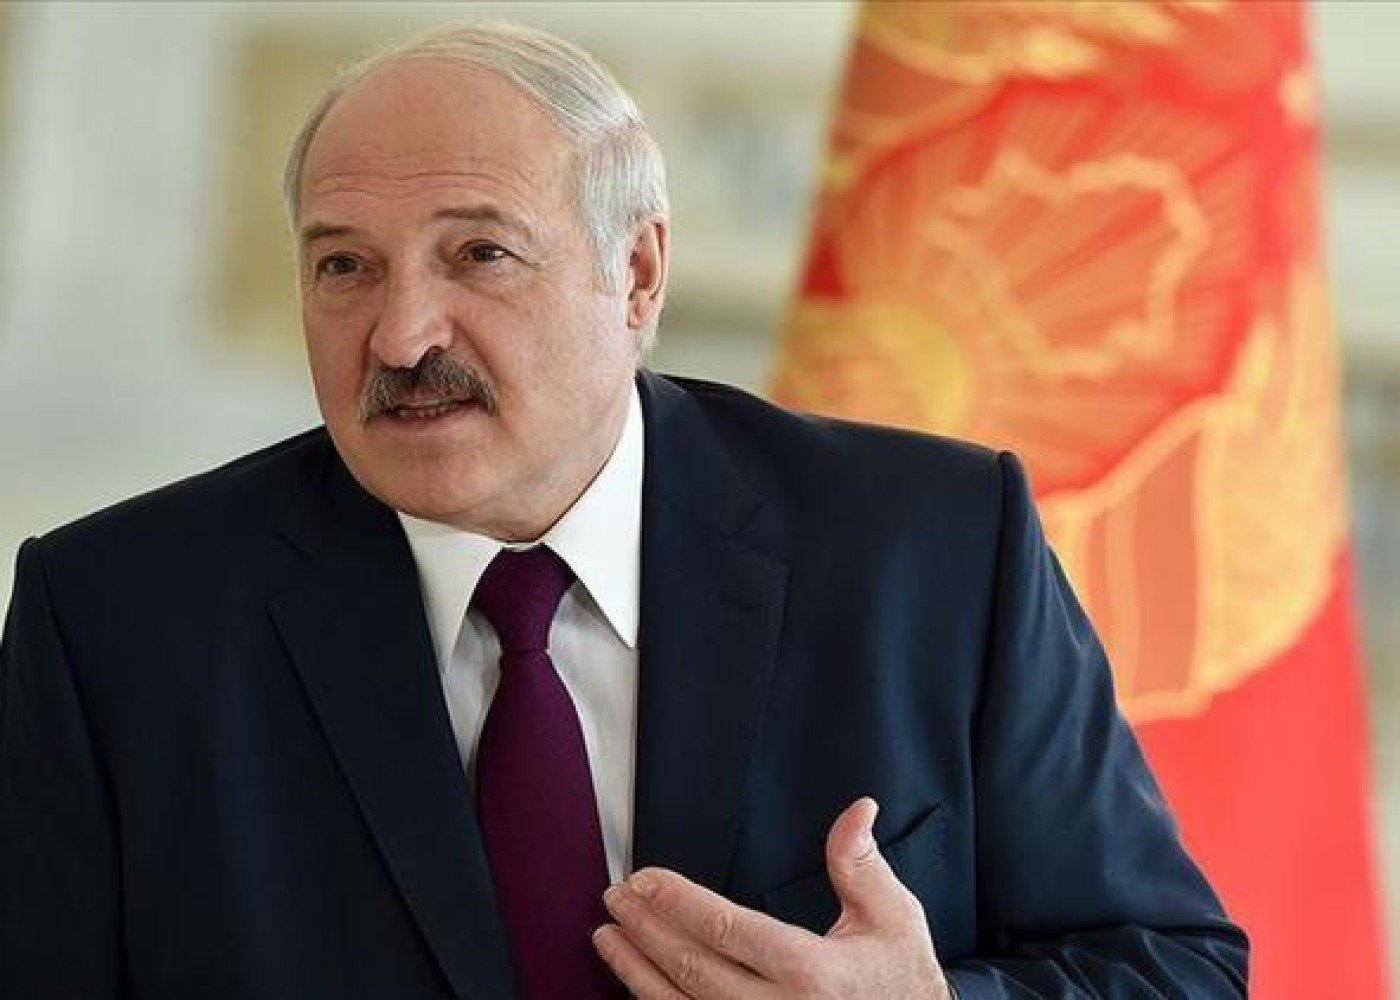 "Vaqnerçi”lər Varşavaya getmək istəyirlər” - Lukaşenko